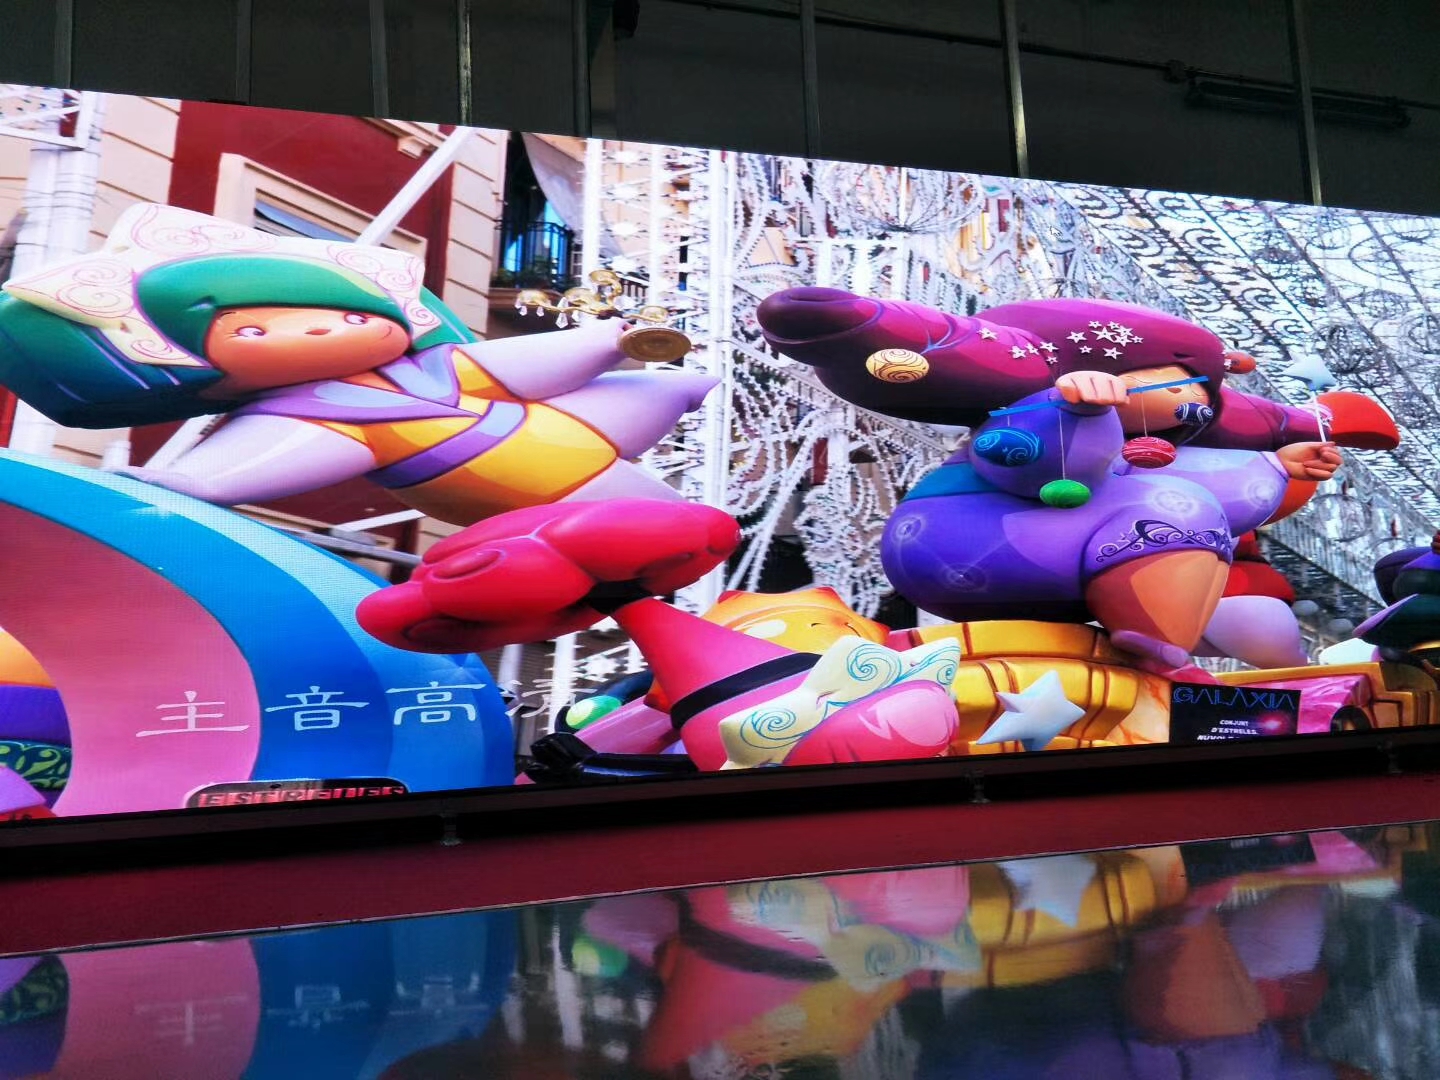 4K P1.25 maliit na pitch na humantong sa display panloob na advertising ng video para sa XTW TV Show